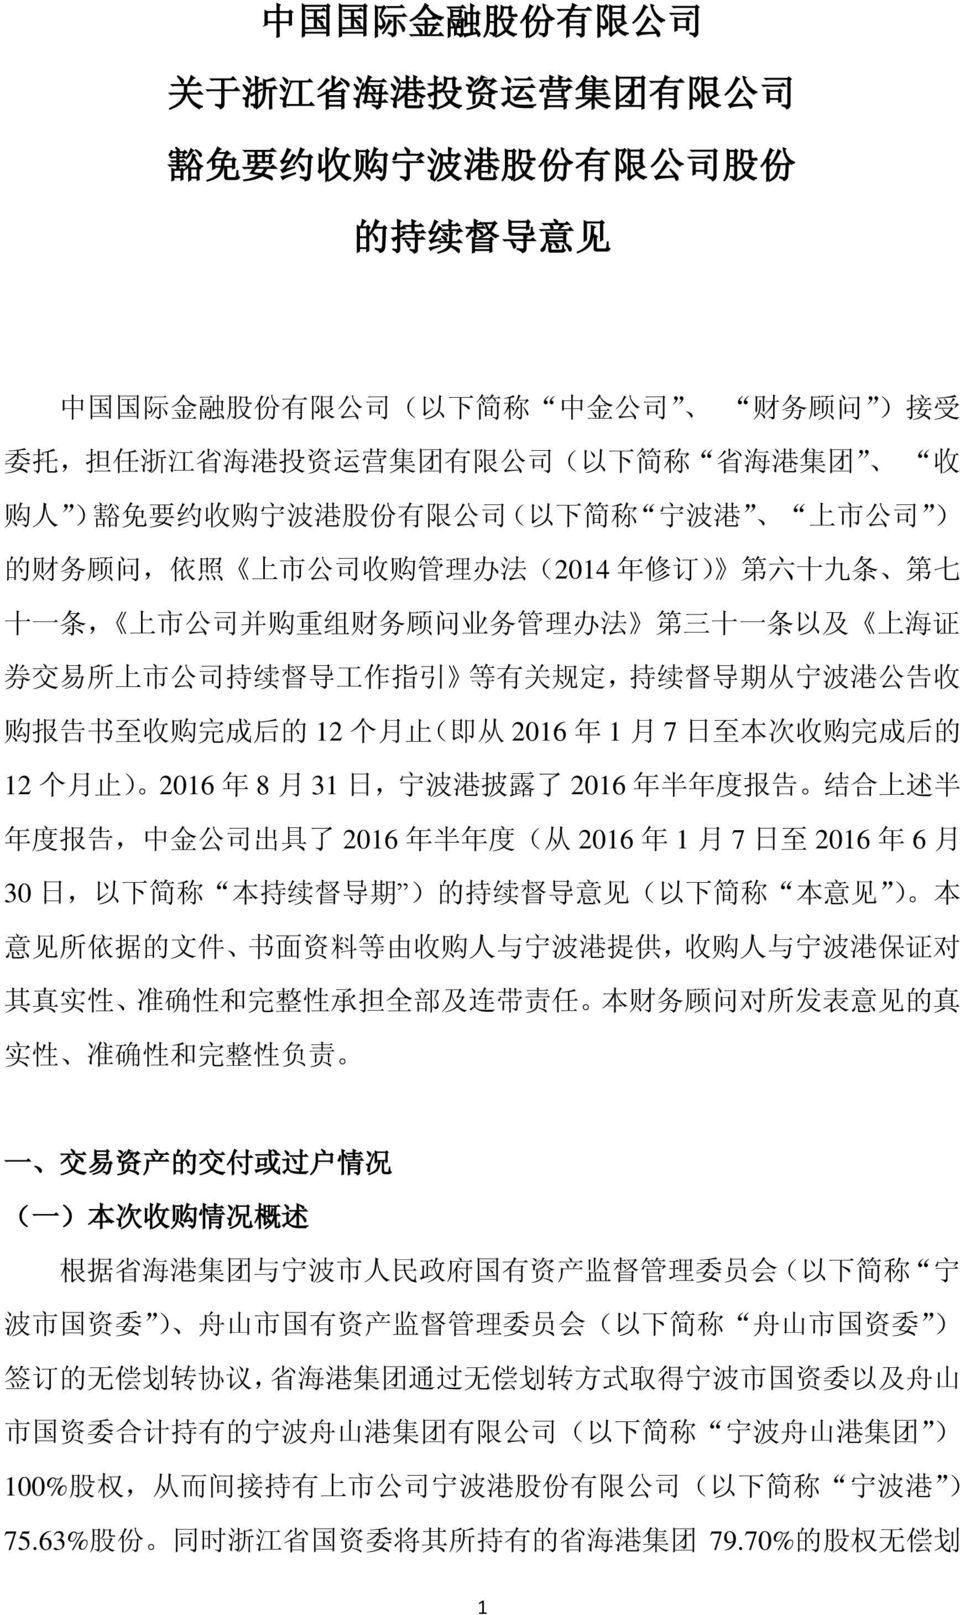 条 以 及 上 海 证 券 交 易 所 上 市 公 司 持 续 督 导 工 作 指 引 等 有 关 规 定, 持 续 督 导 期 从 宁 波 港 公 告 收 购 报 告 书 至 收 购 完 成 后 的 12 个 月 止 ( 即 从 2016 年 1 月 7 日 至 本 次 收 购 完 成 后 的 12 个 月 止 ) 2016 年 8 月 31 日, 宁 波 港 披 露 了 2016 年 半 年